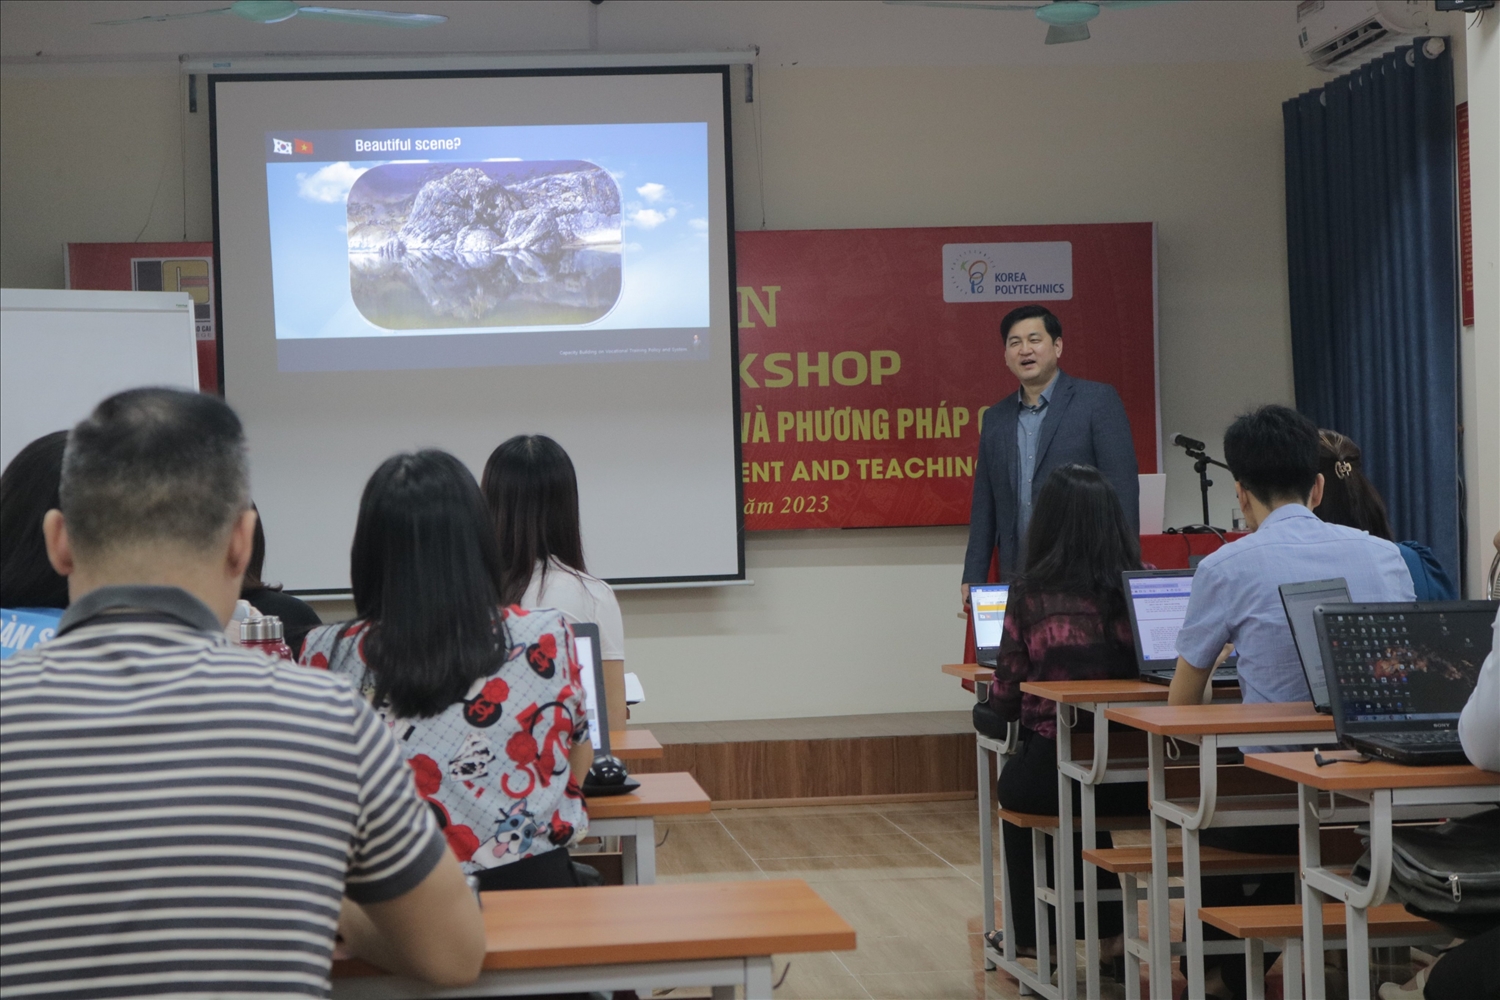 Việc tổ chức các lớp tập huấn do các chuyên gia, Giáo sư các trường nghề nước ngoài giảng dạy là một trong các hoạt động nằm trong lộ trình xây dựng Trường Cao đẳng Lào Cai thành trường nghề chất lượng cao vào năm 2025